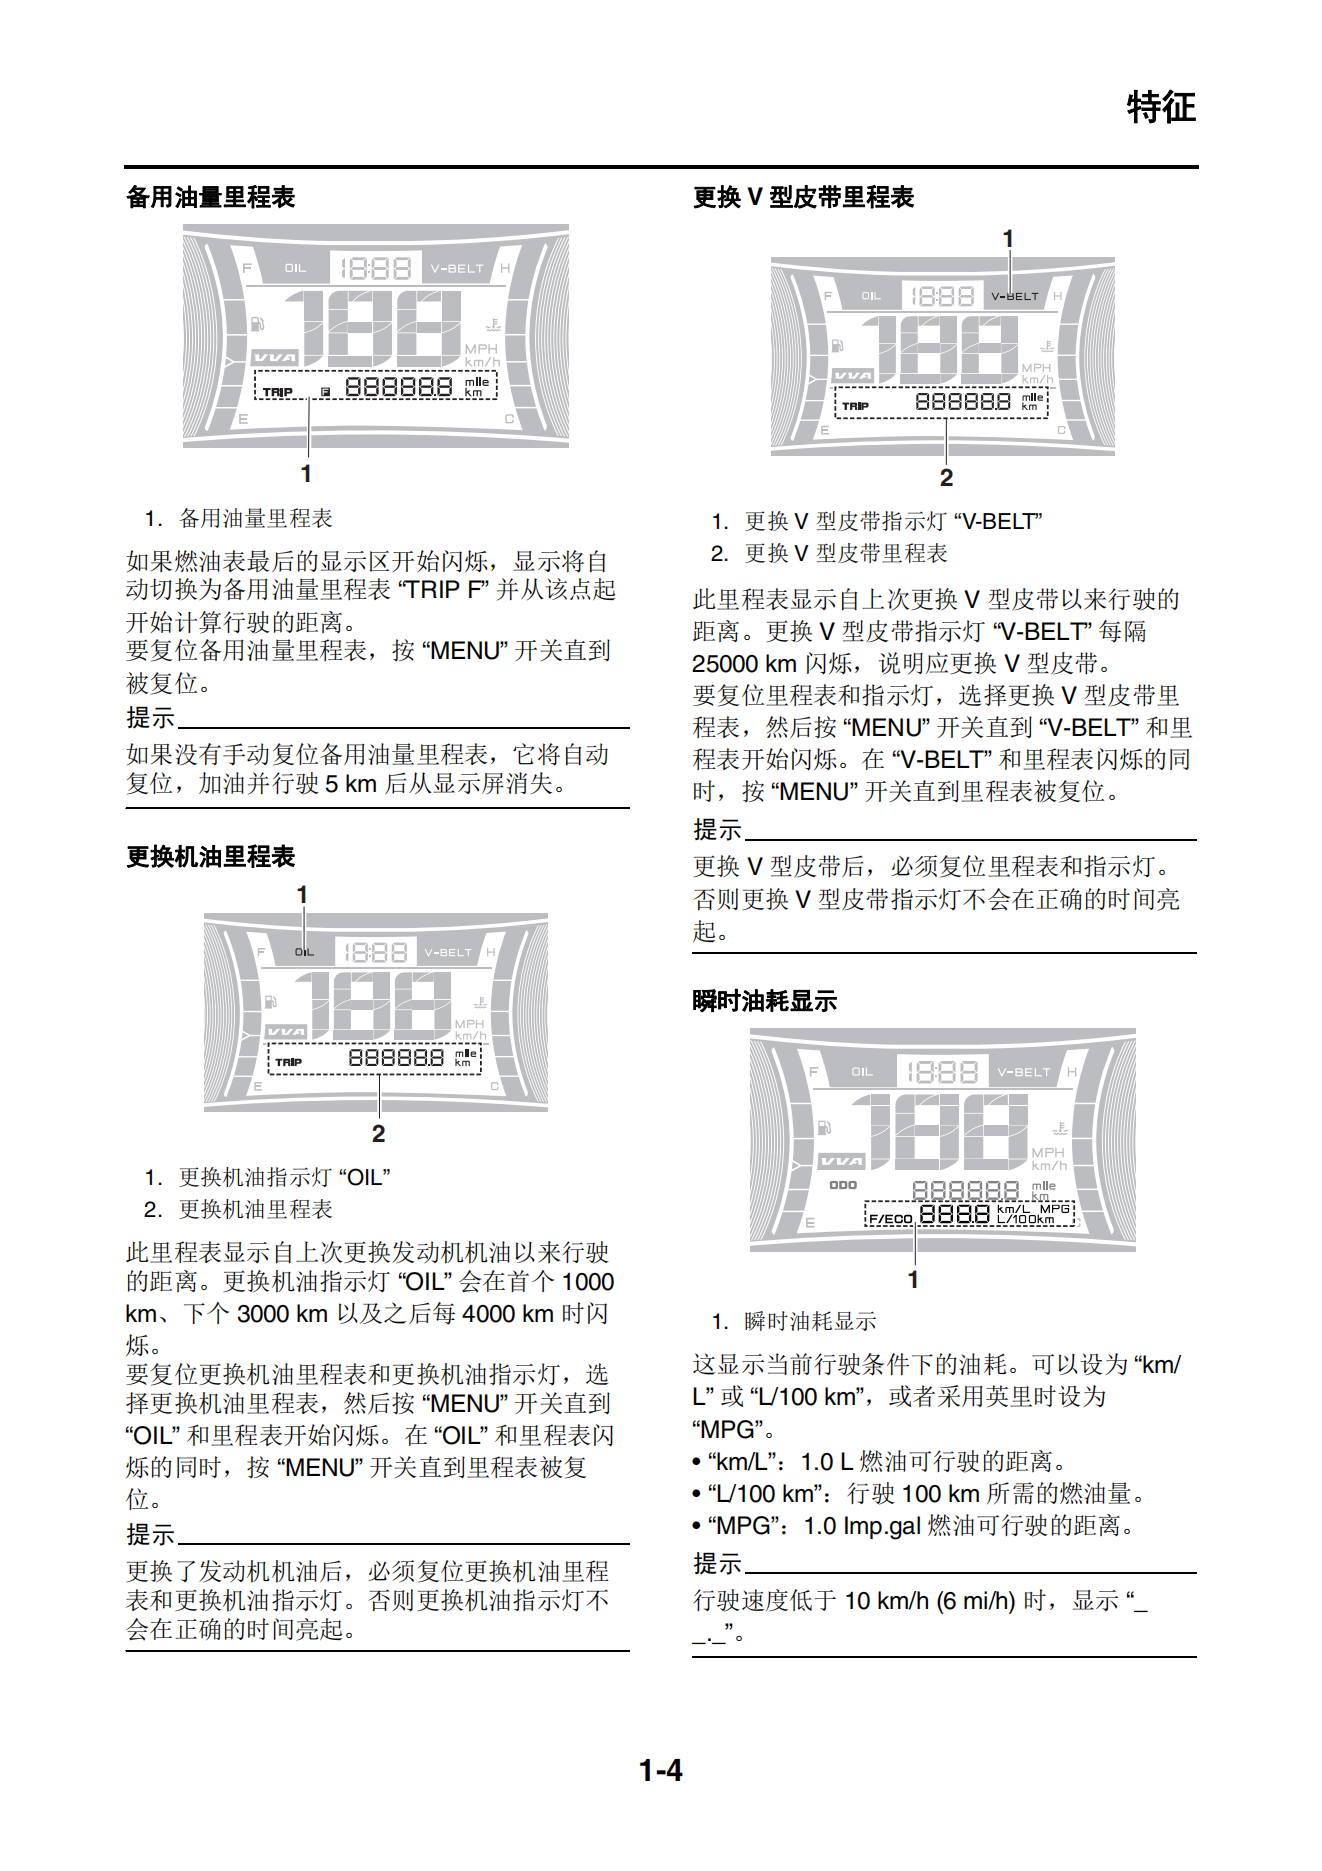 原版中文2020年雅马哈nmax155维修手册GPD150-A维修手册插图2